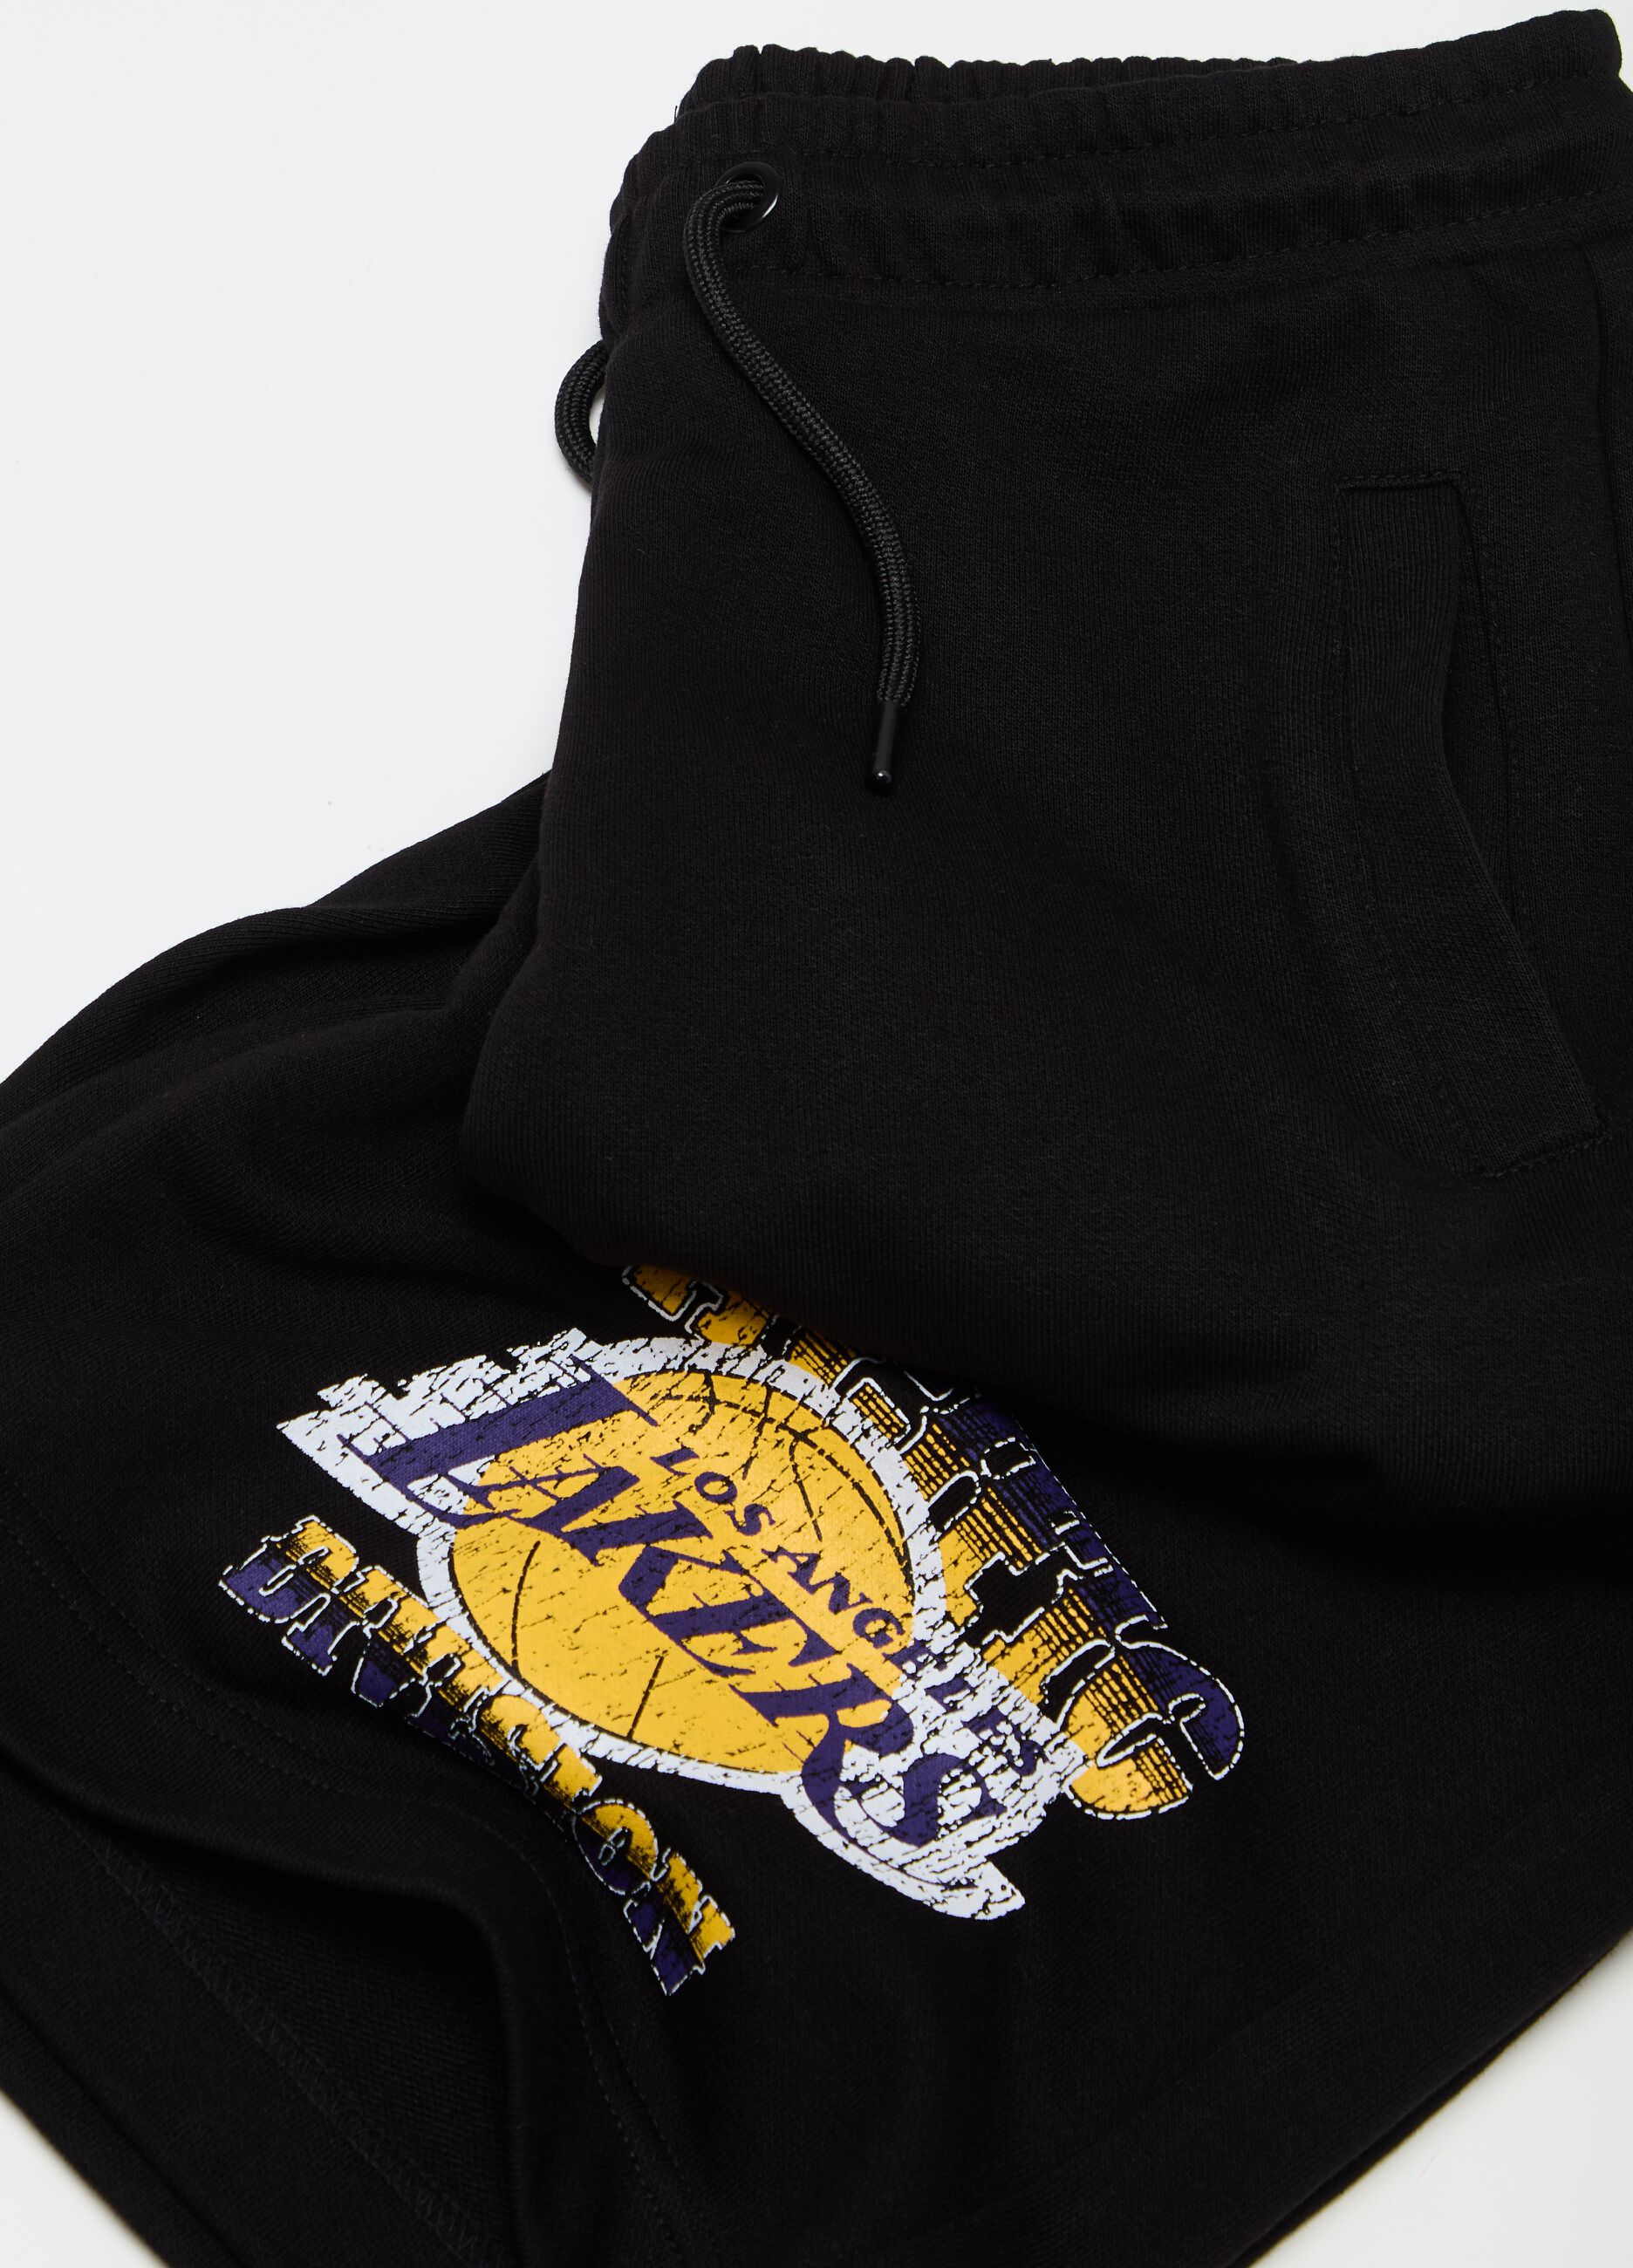 Bermuda shorts with NBA Los Angeles Lakers print